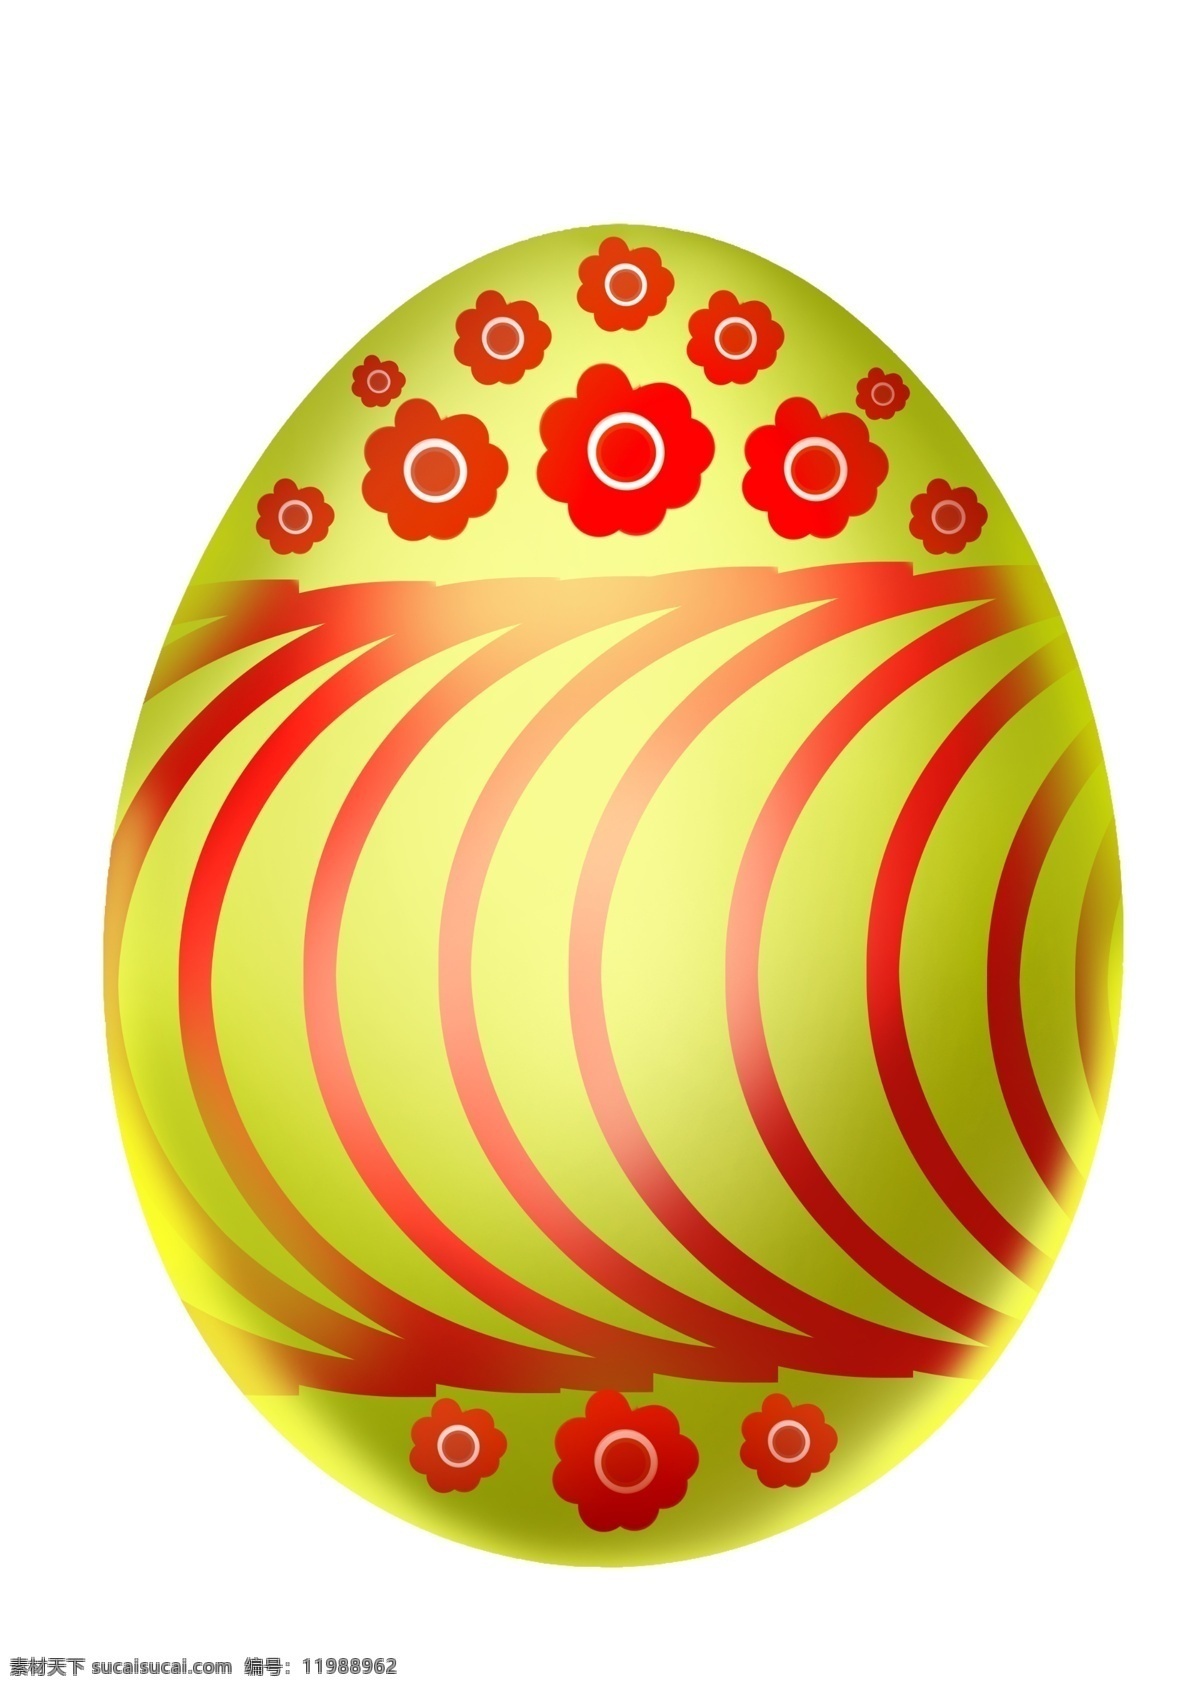 复活节 红色 彩蛋 插画 红色的花朵 卡通插画 彩蛋插画 复活节插画 节日插画 鸡蛋插画 黄色的彩蛋